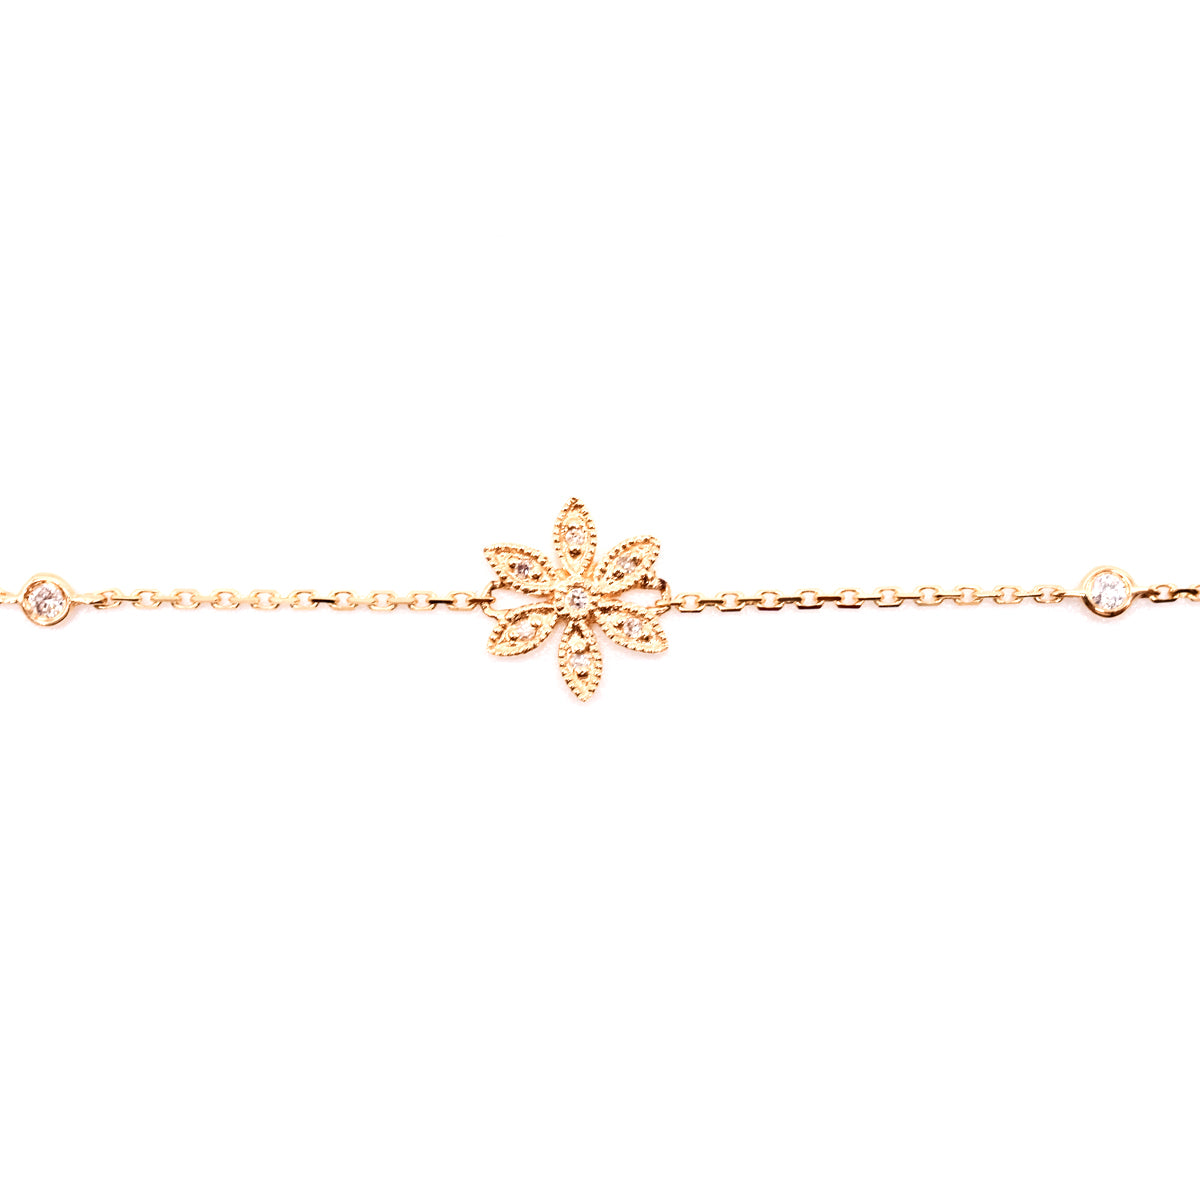 Bracelet With Diamonds "Flower" - 7" - 14k